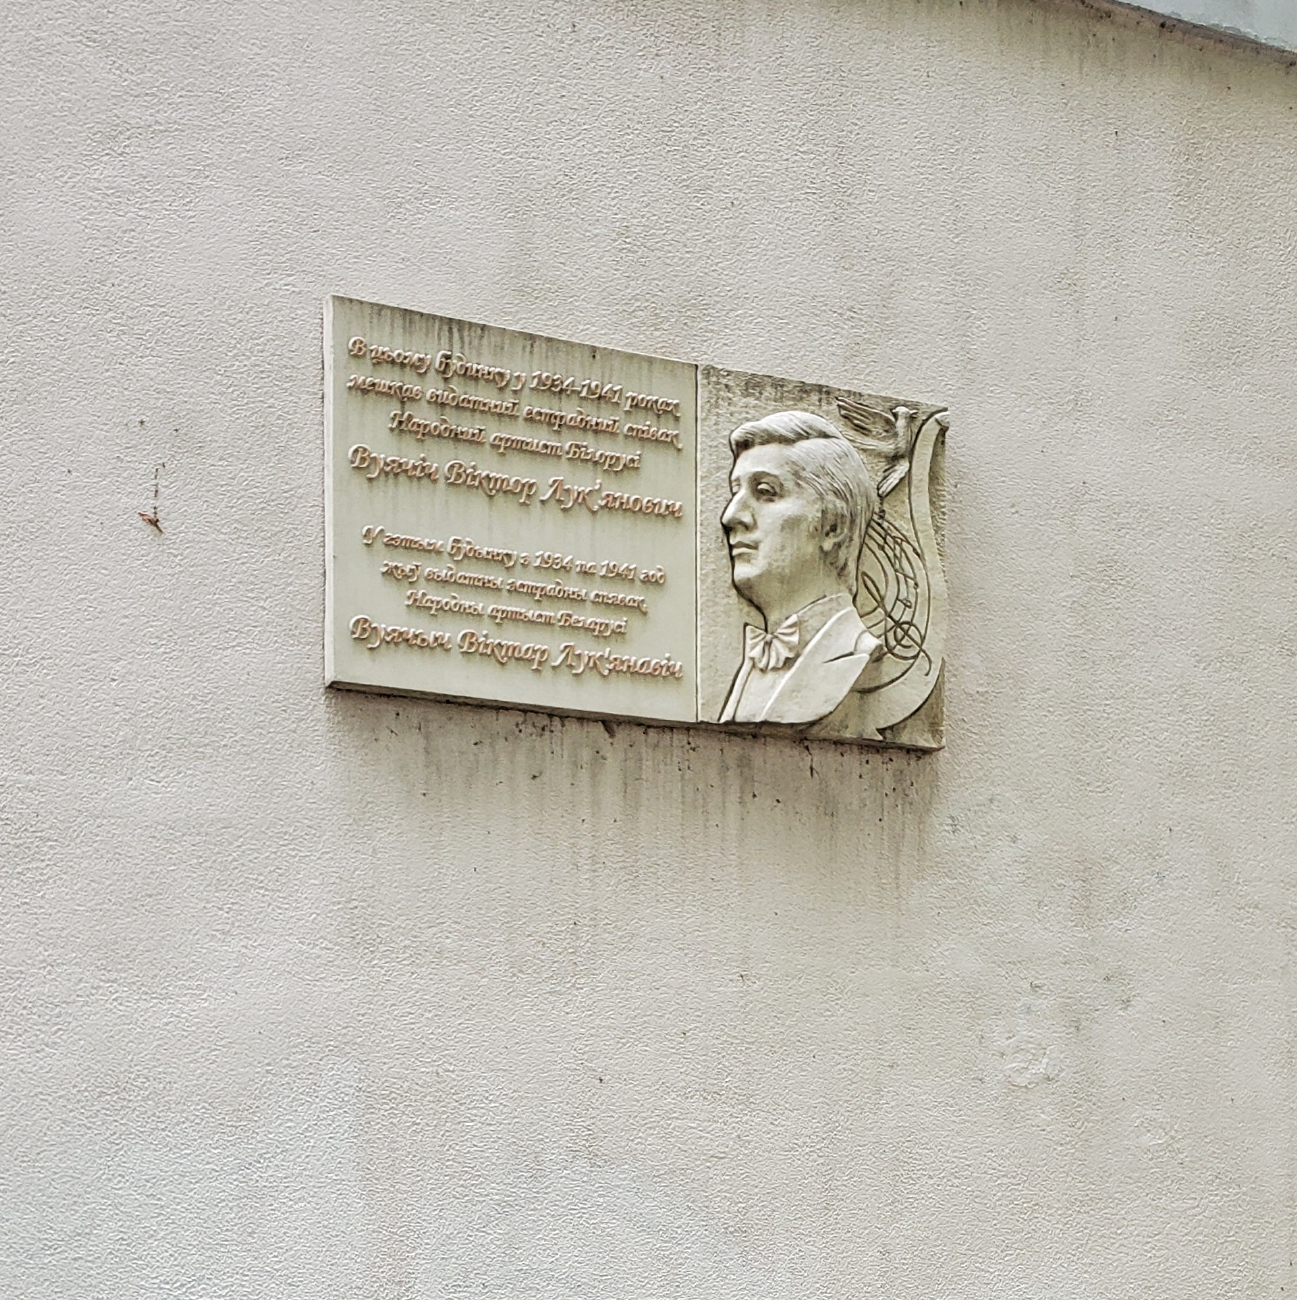 Kharkov, Улица Библика, 3. Kharkov — Memorial plaques